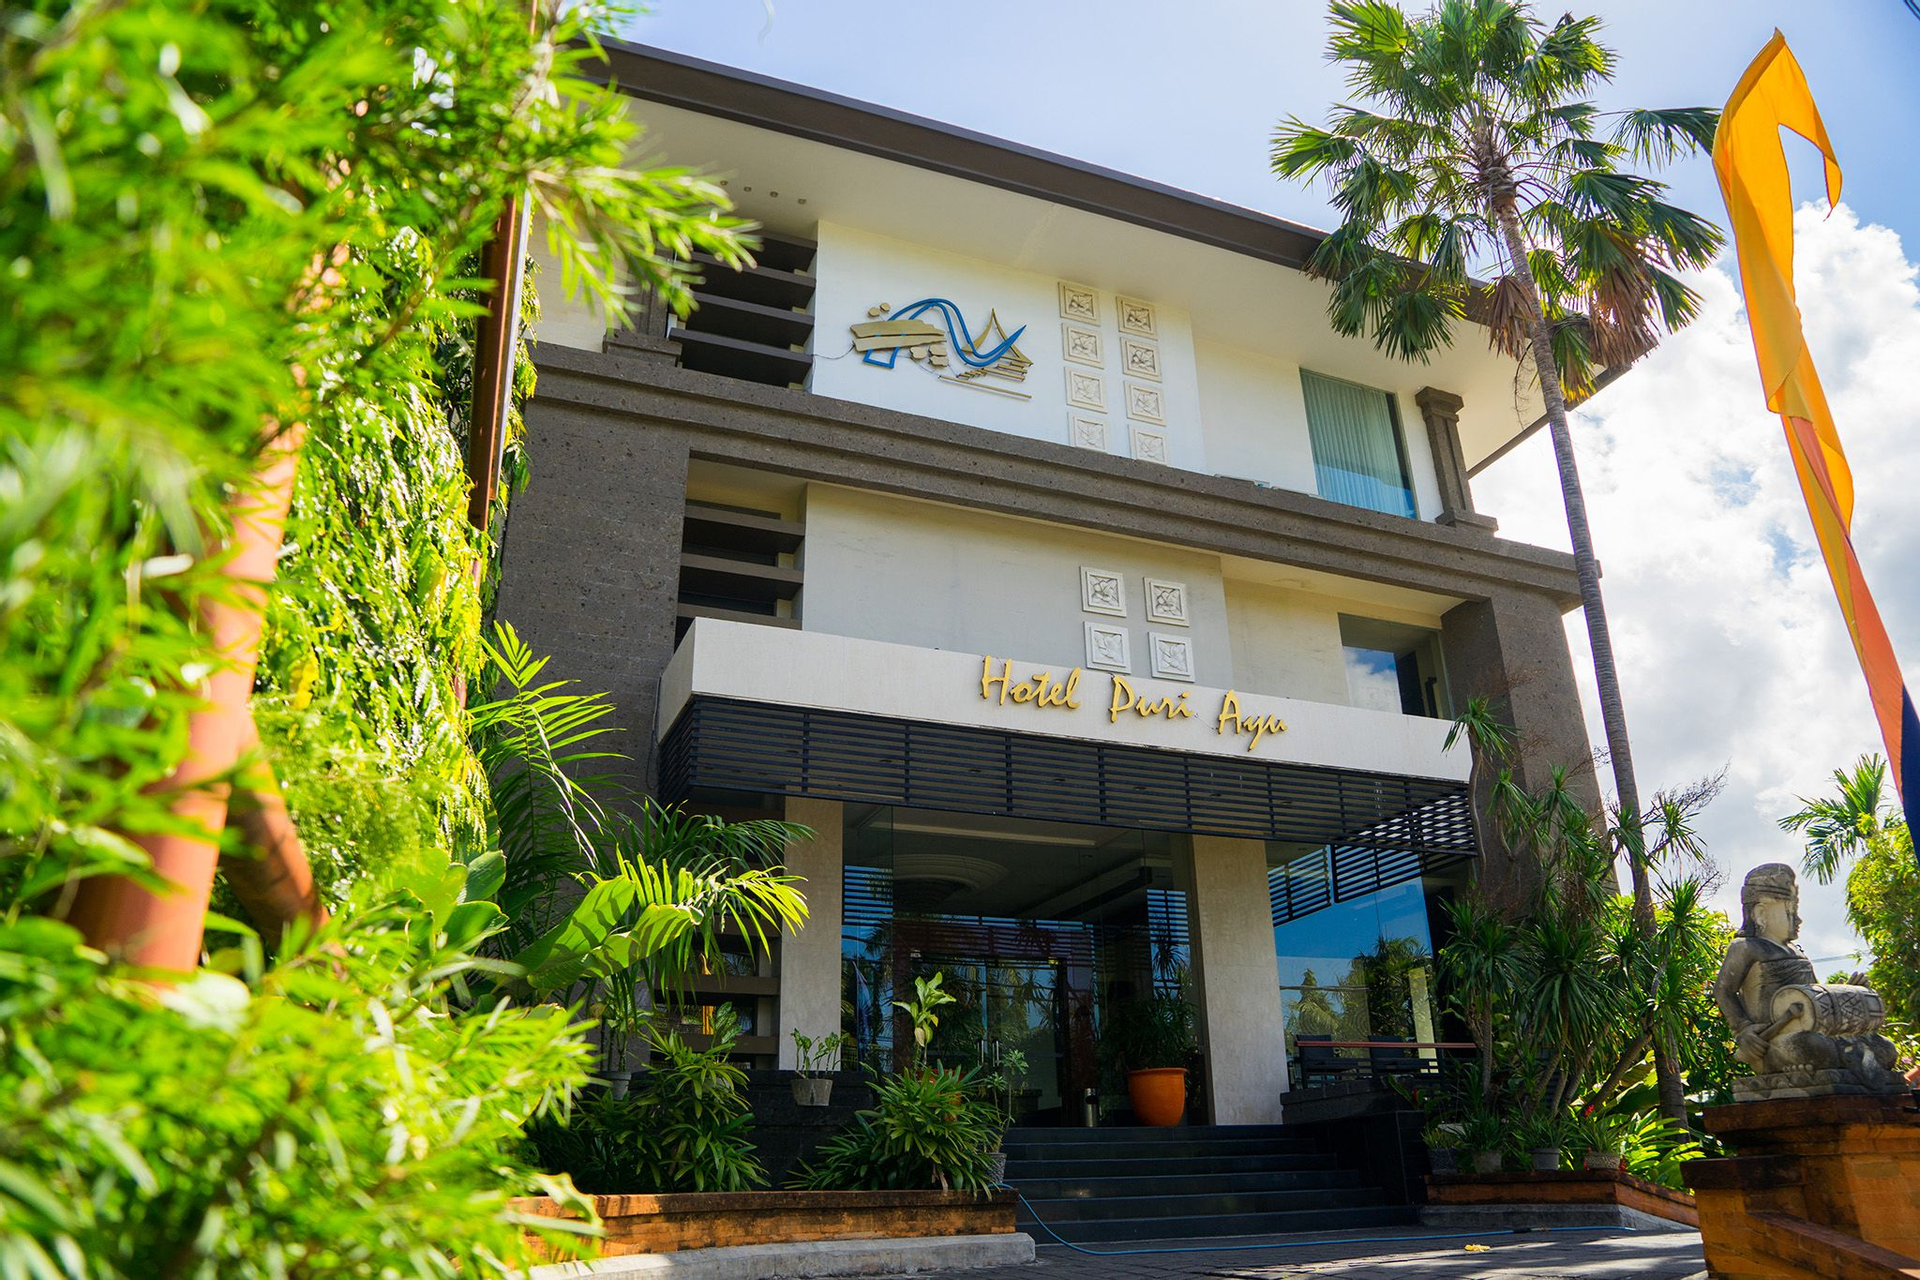 Exterior & Views 1, Hotel Puri Ayu, Denpasar